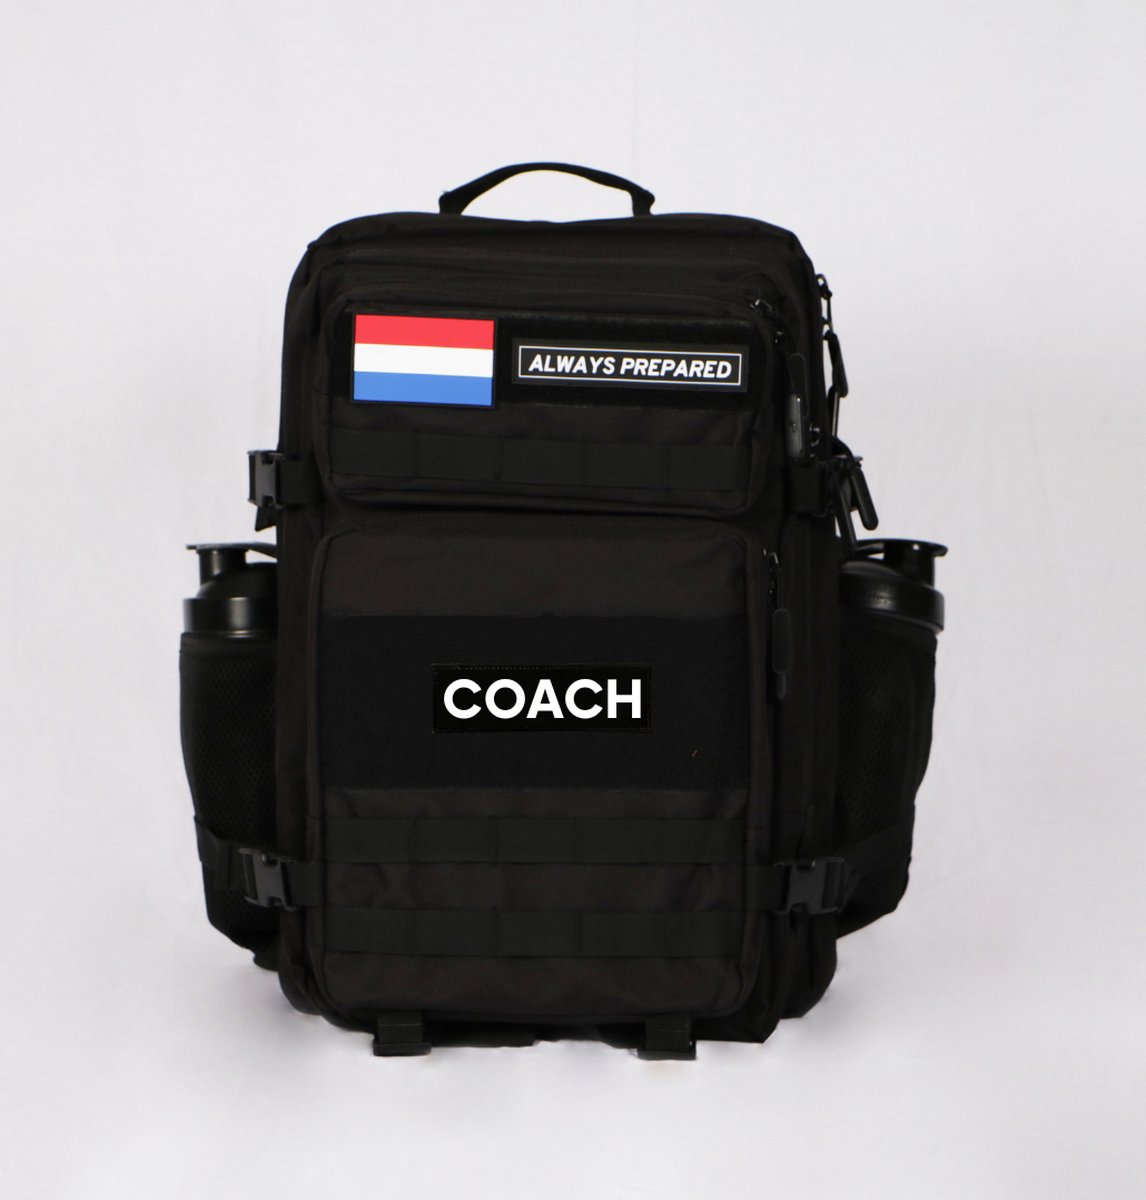 Backpack | Waterdicht | Rugzak | Rugtas | Dagrugzak | Wandelen | Hike rugzak | Schooltas | Coach | 45 Liter | Zwart